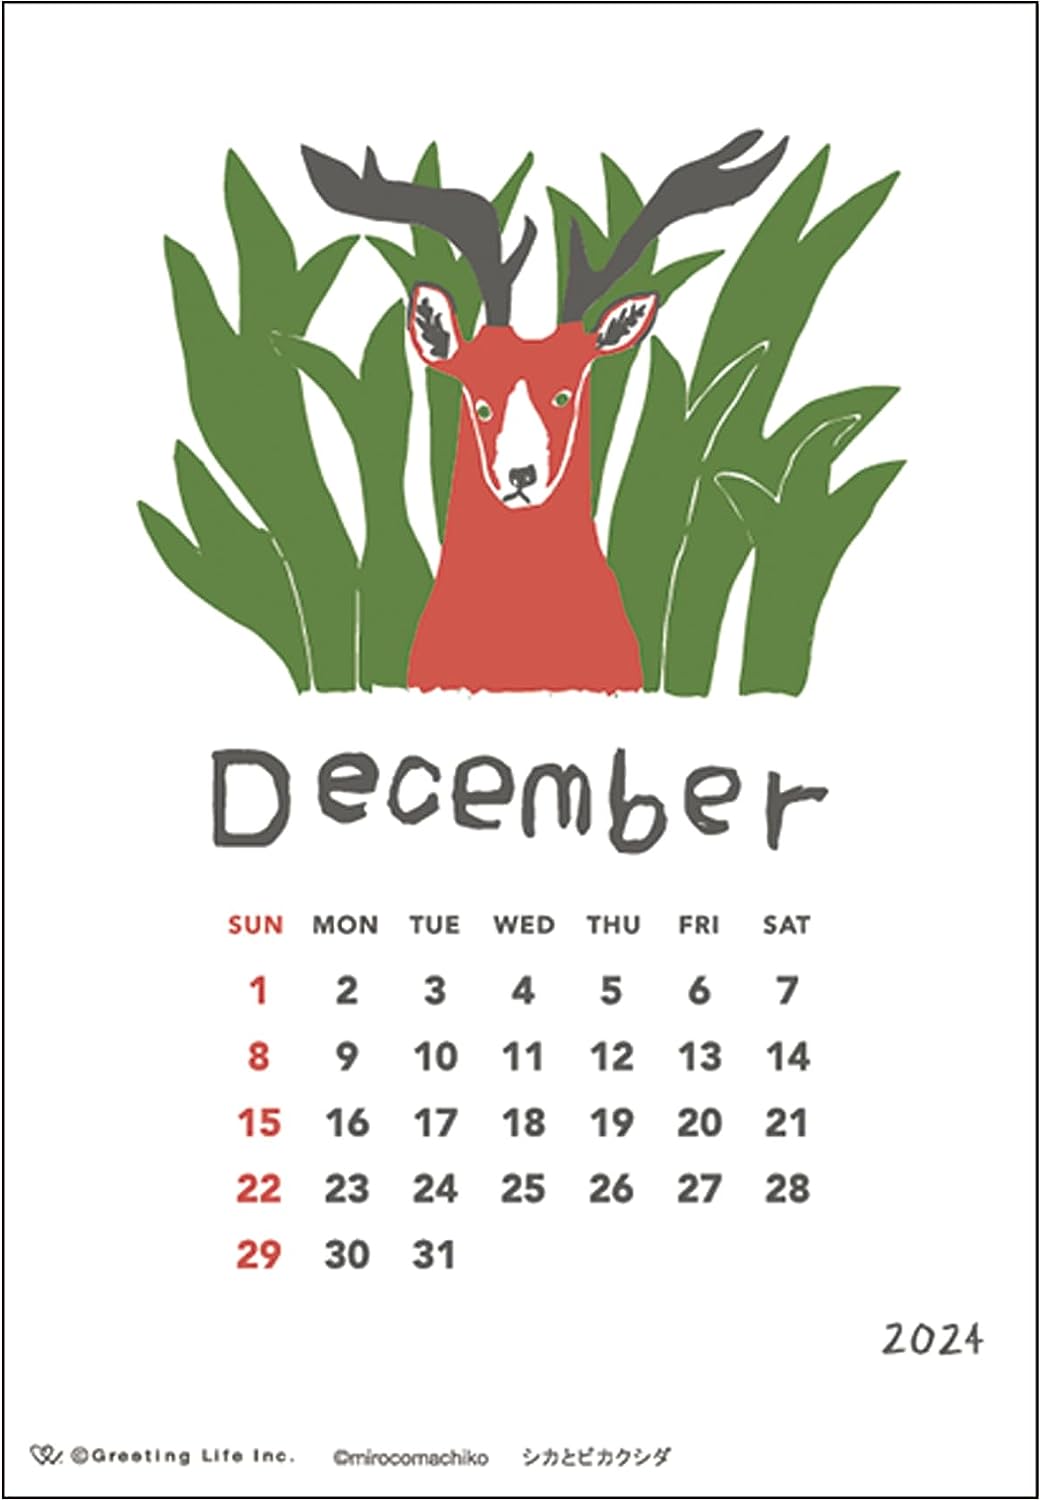 ミロコマチコが描く動物たちを活版印刷で生き生きと表現した、おしゃれな卓上カレンダー2024年版